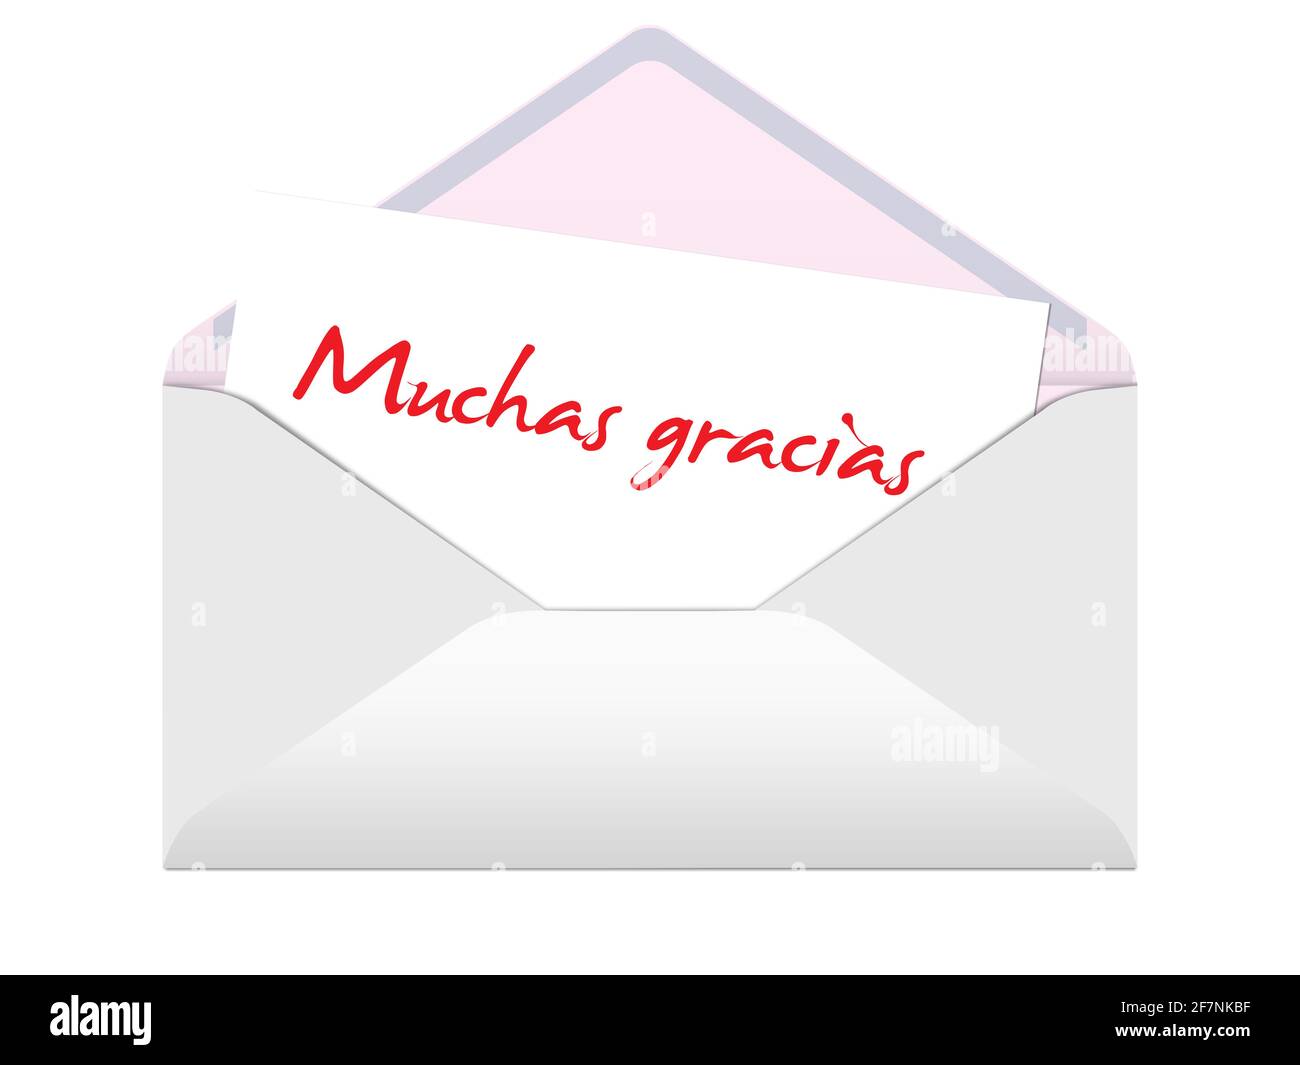 Enveloppe et carte avec le texte 'Muchas gracias', traduction 'Merci', illustration 3D Banque D'Images